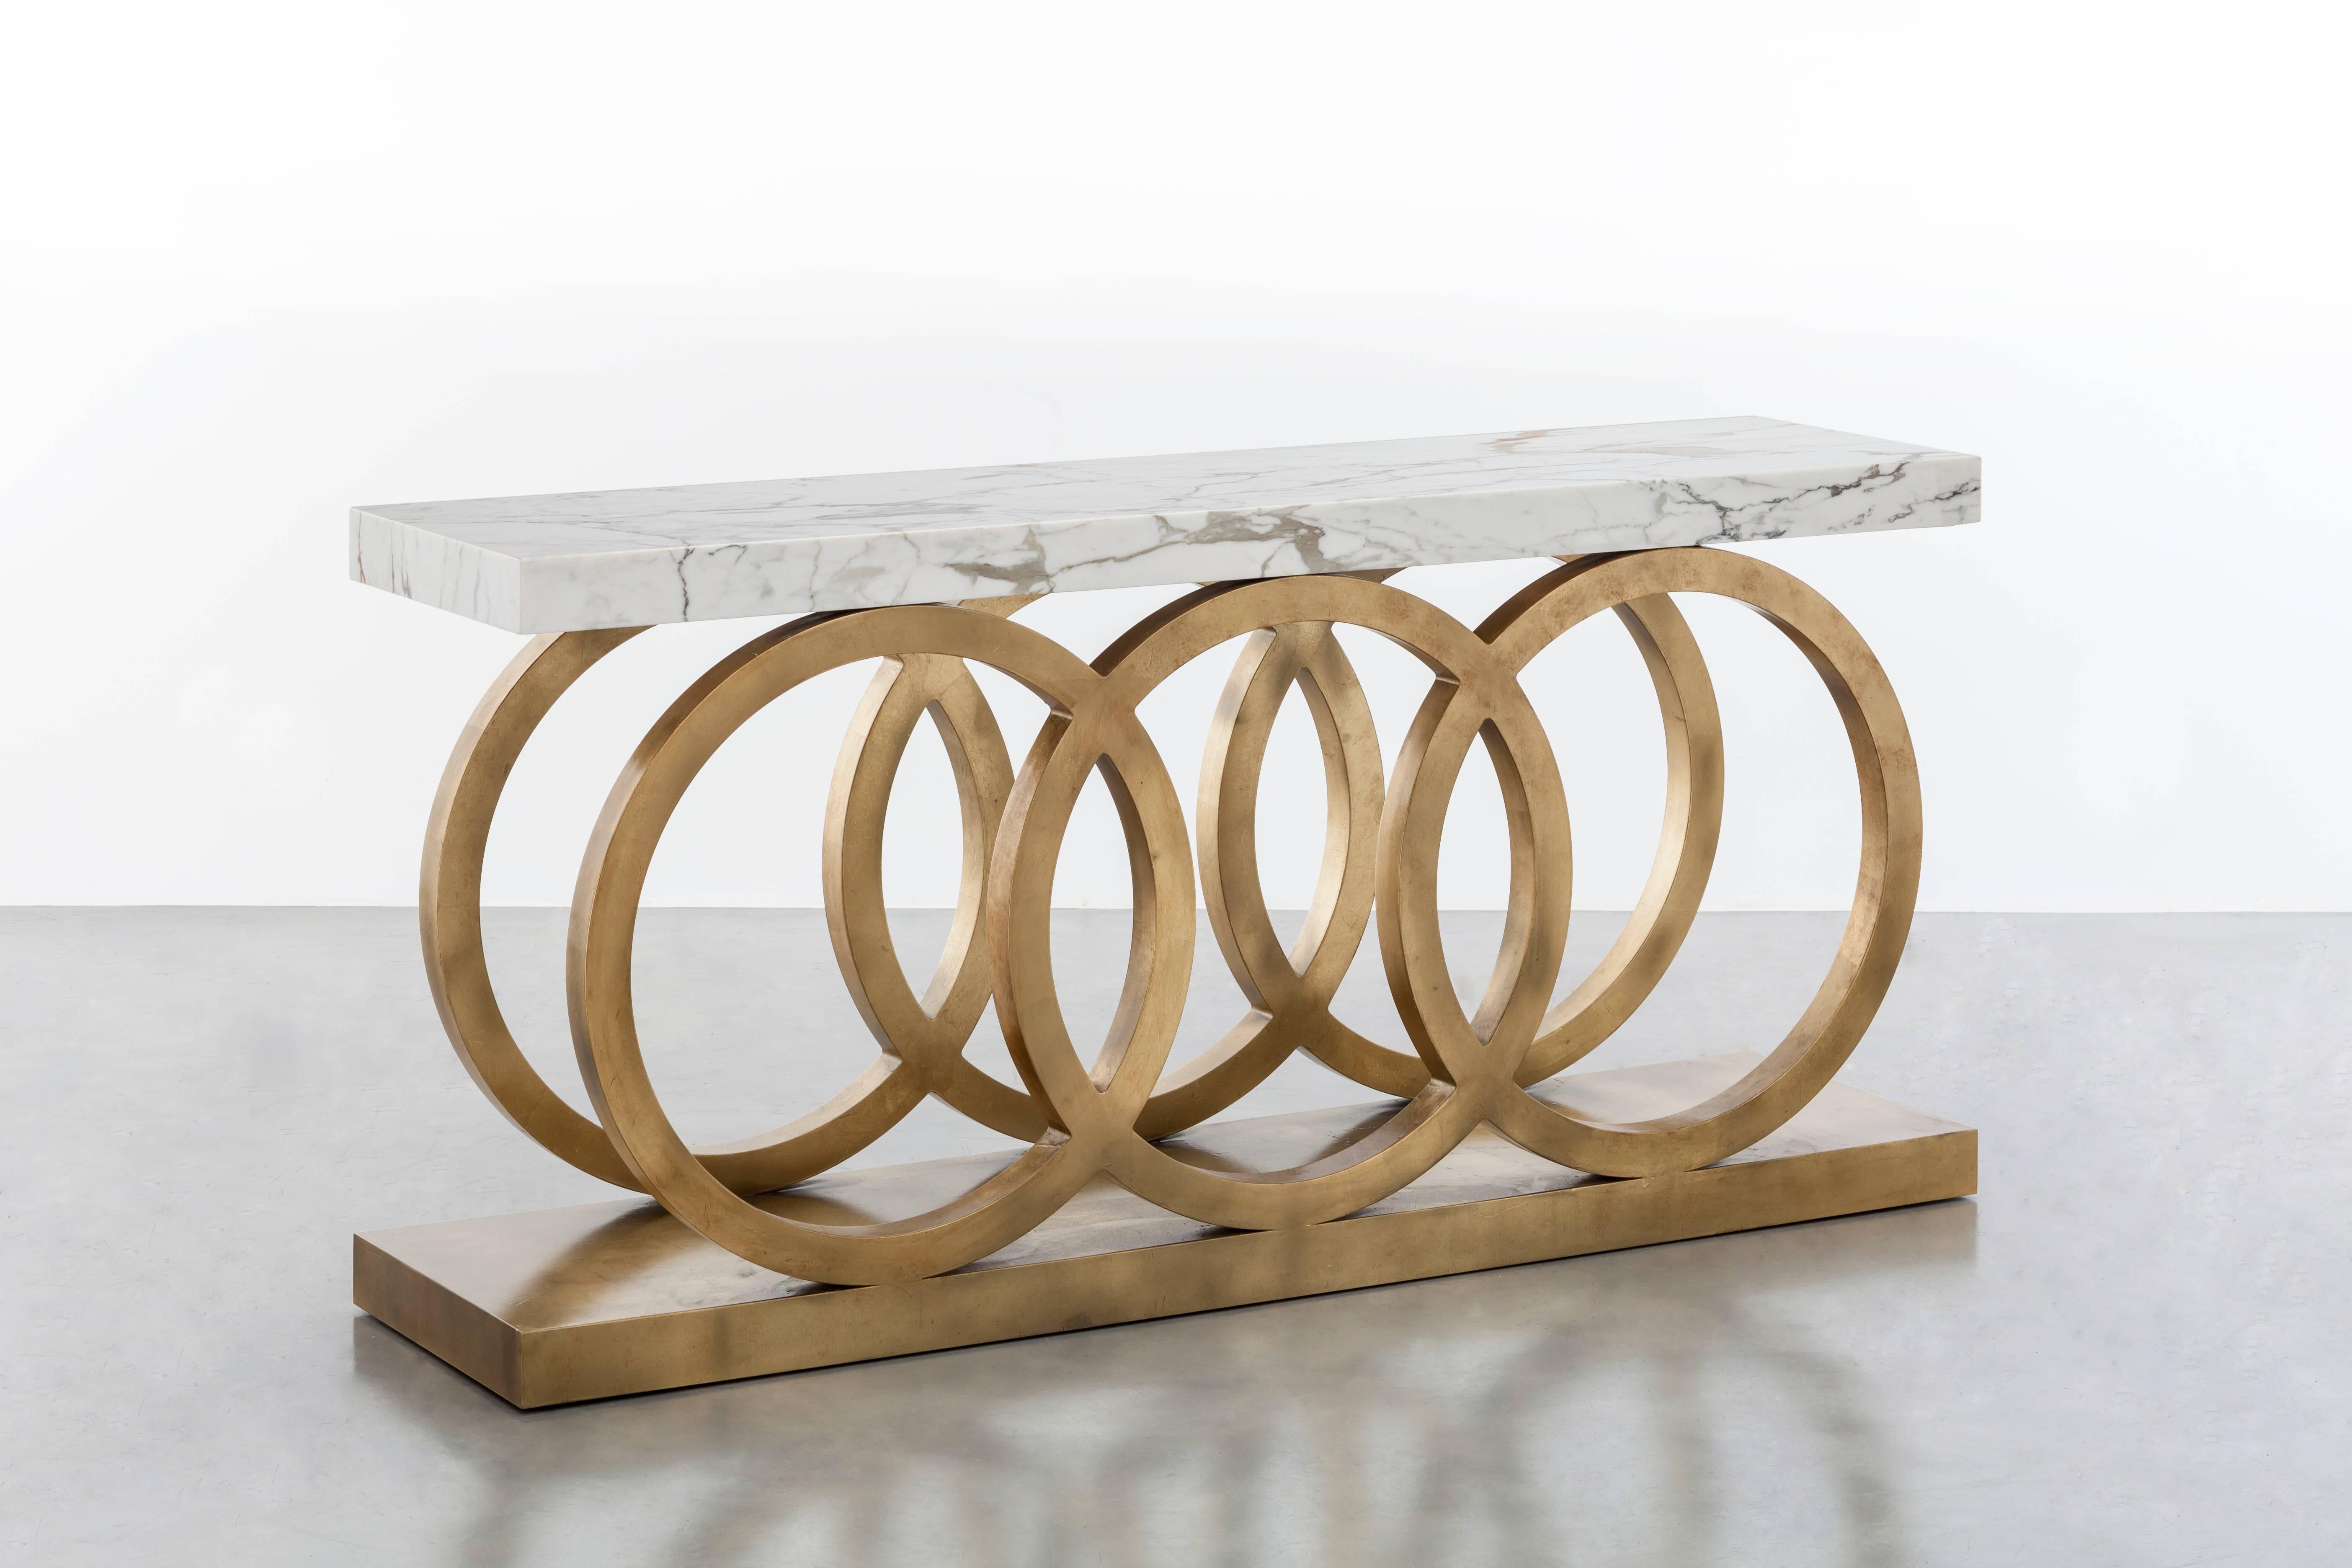 OSLO GRANDE CONSOLE – moderner runder Tisch mit Blattgold und Carrara-Marmor

Der Konsolentisch Oslo Grande ist ein luxuriöses und modernes Möbelstück, das sich perfekt für gehobene Innenräume eignet. Der atemberaubende Rahmen aus Blattgold und die